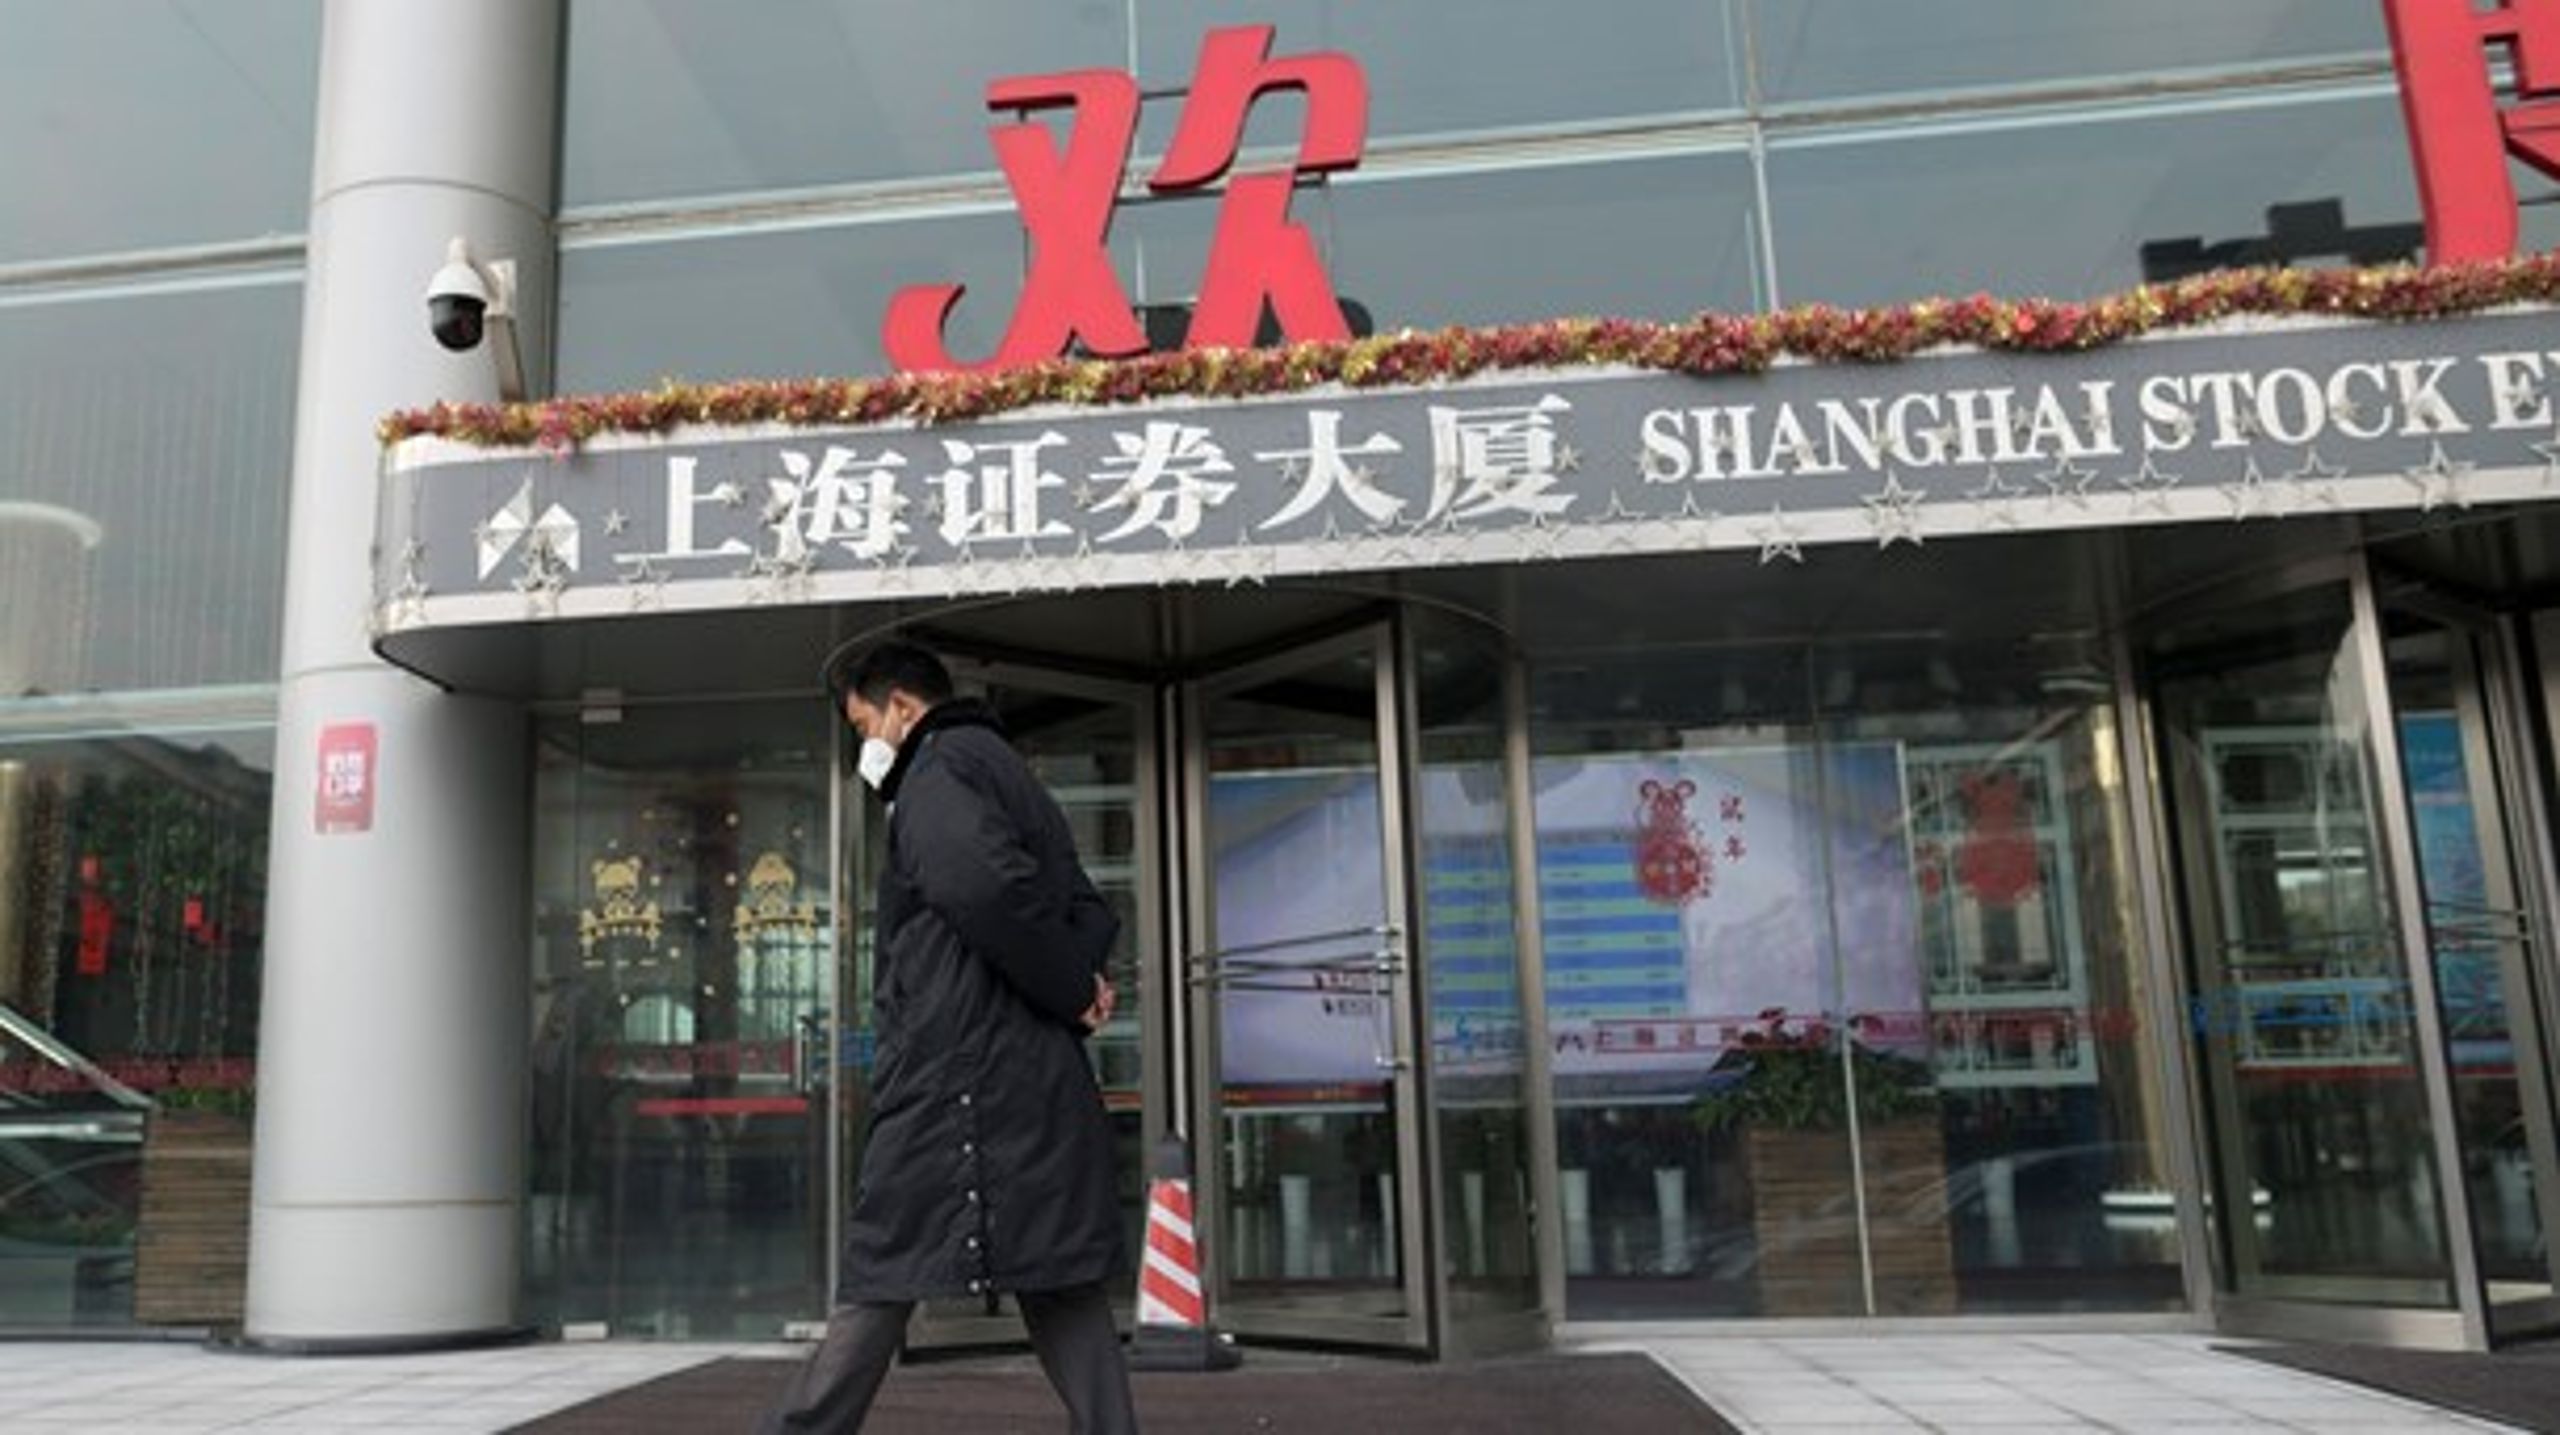 Shanghaibörsen rasade på måndagen. Börsen har varit stängd i över tio dagar på grund av nyårsfirandet.